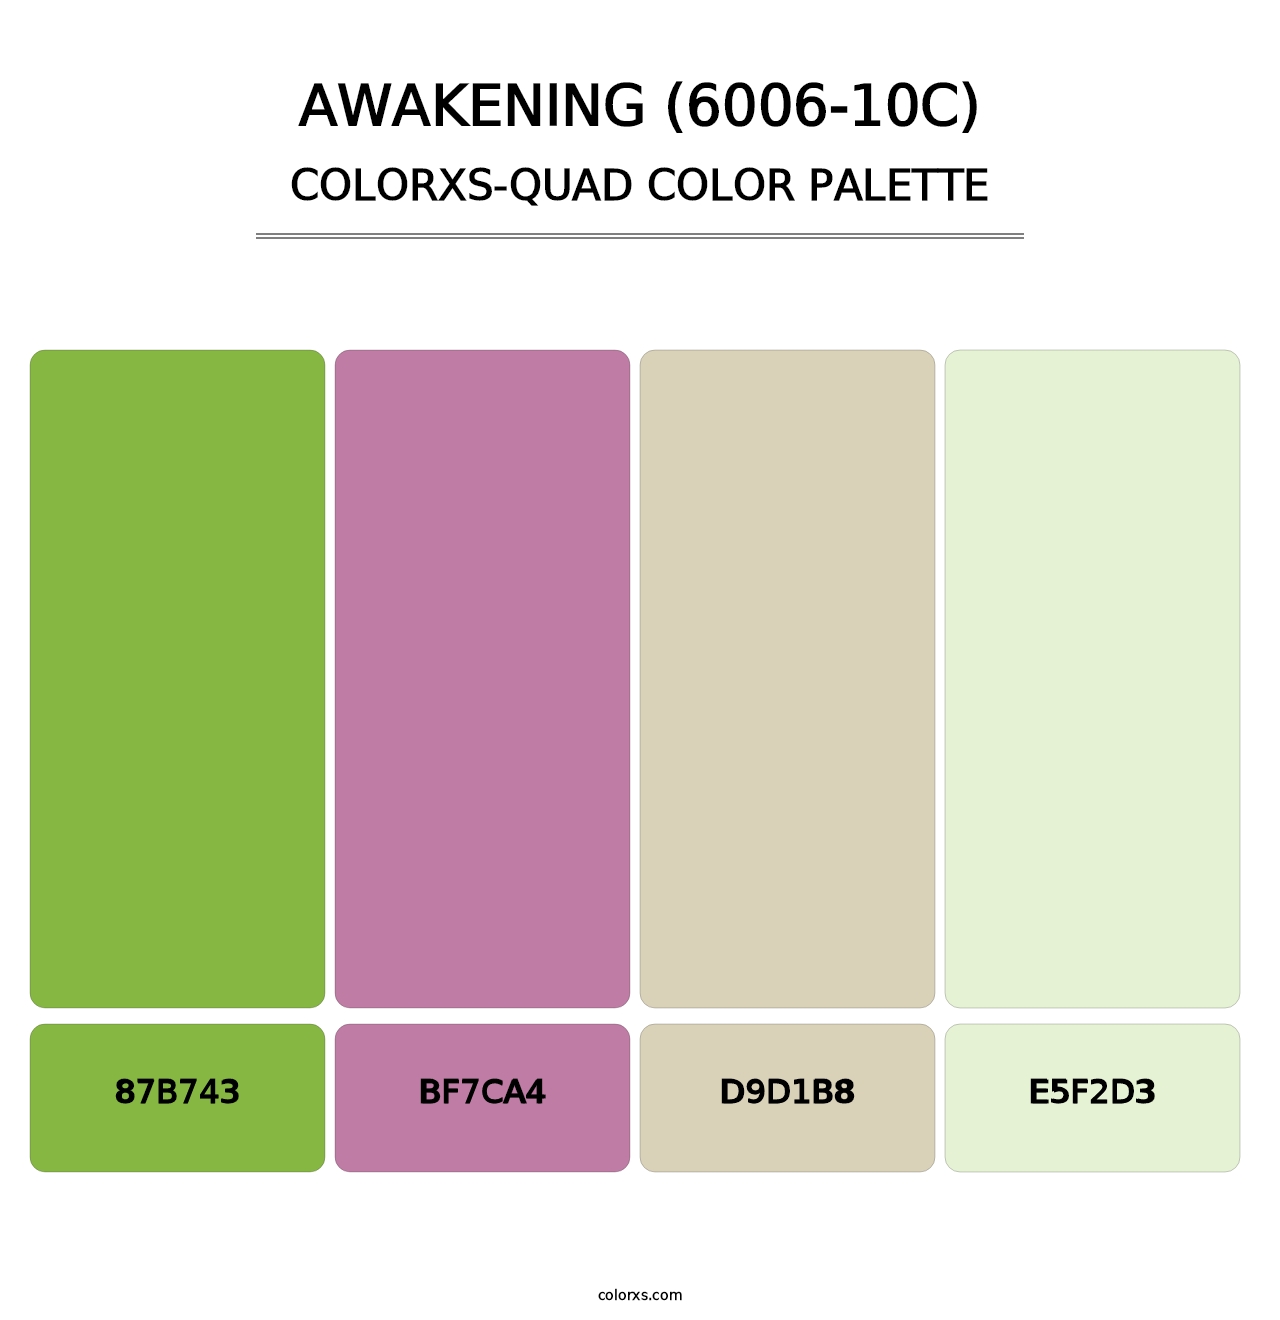 Awakening (6006-10C) - Colorxs Quad Palette